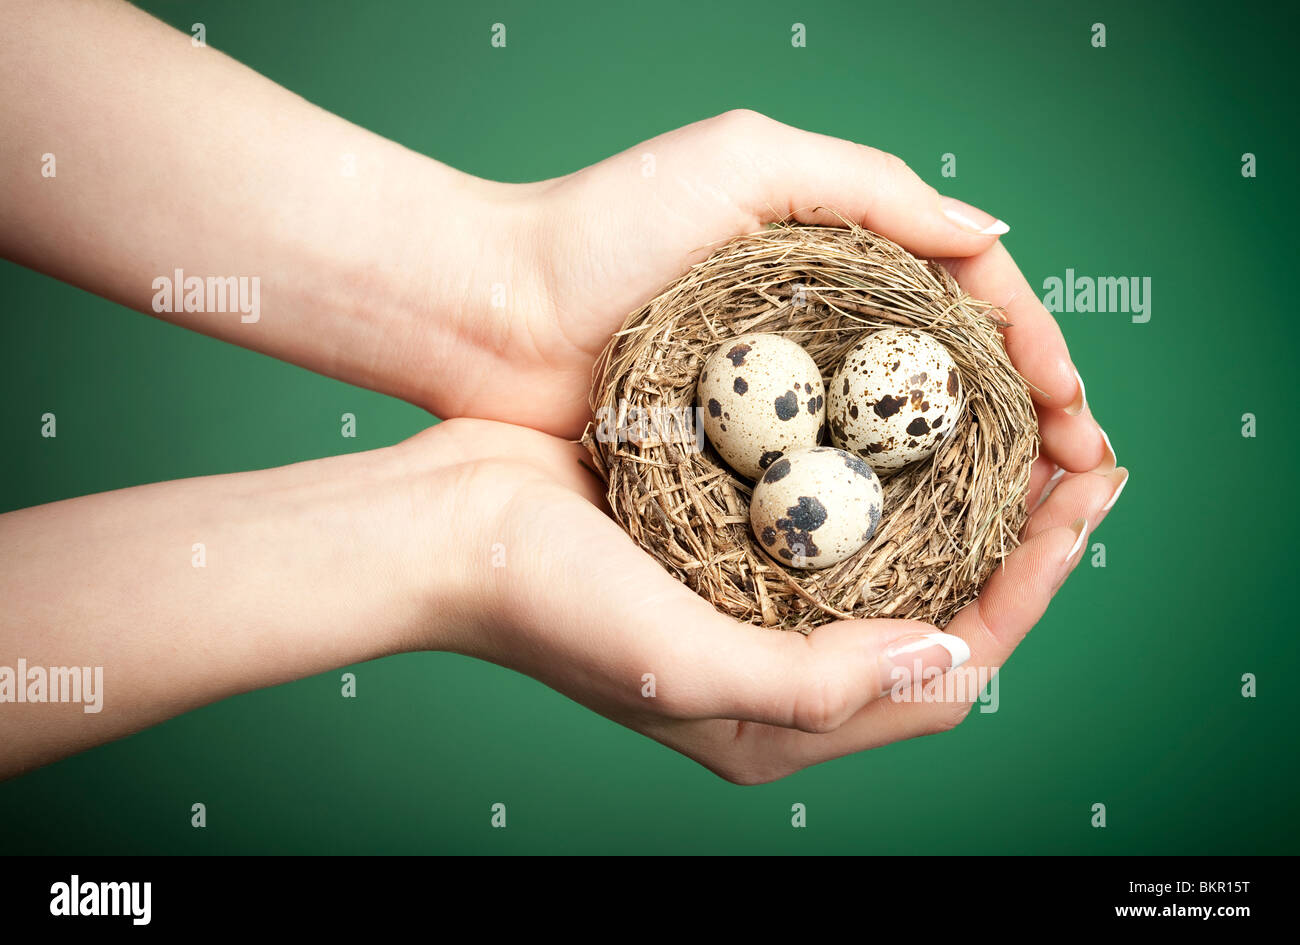 Sorgfältige weibliche Hände halten ein Vogelnest mit 3 Eiern. Konzeptionelle Umwelt-image Stockfoto